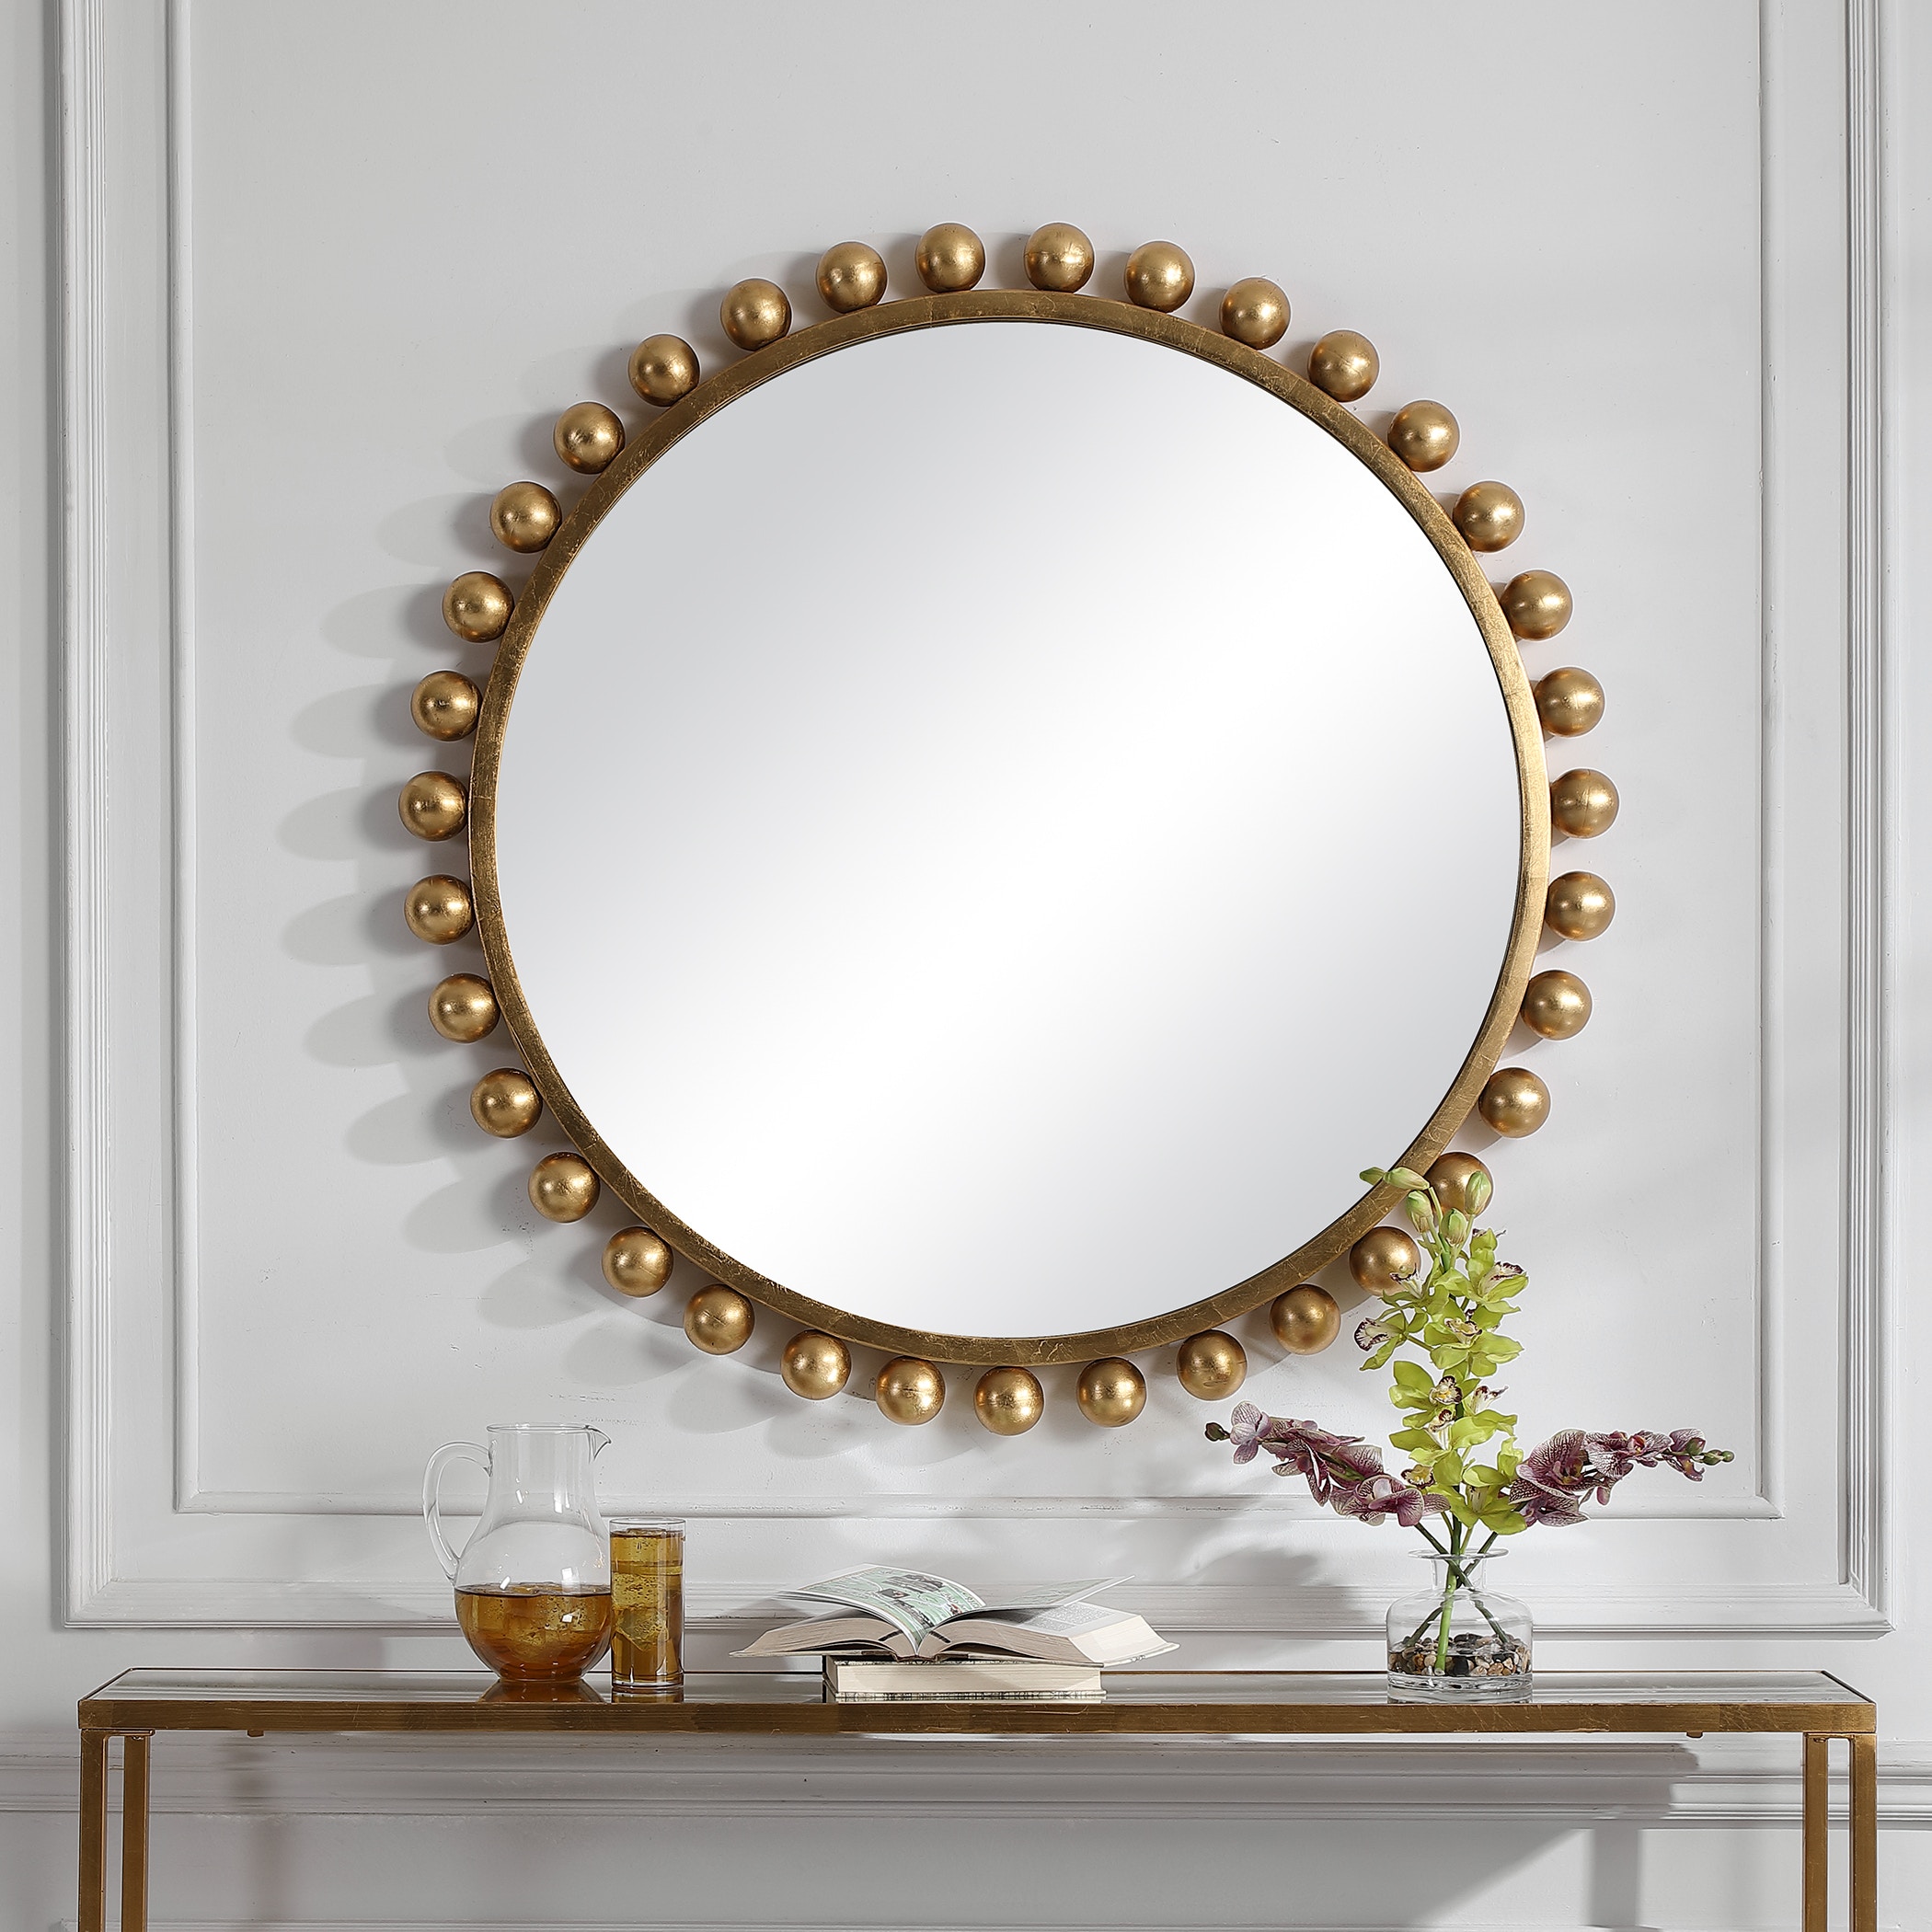 Designer Gold Monogram Crystal Compact Mirror - Yiwu Good Morning